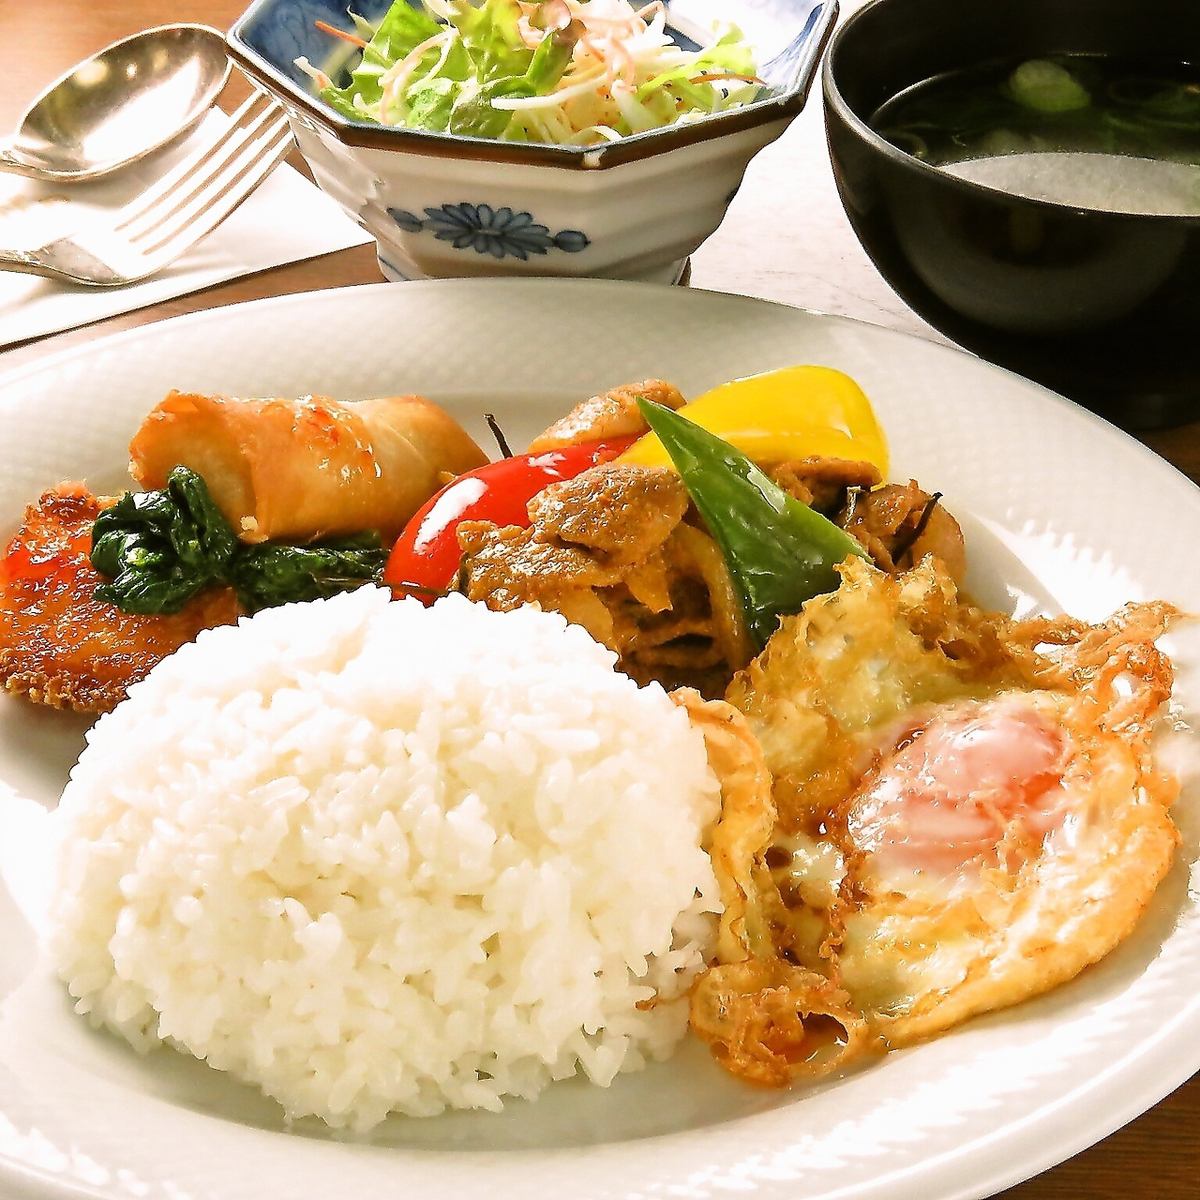 広島で本場のタイ料理が楽しめると人気のレストラン。タイ料理が食べたくなったらココ